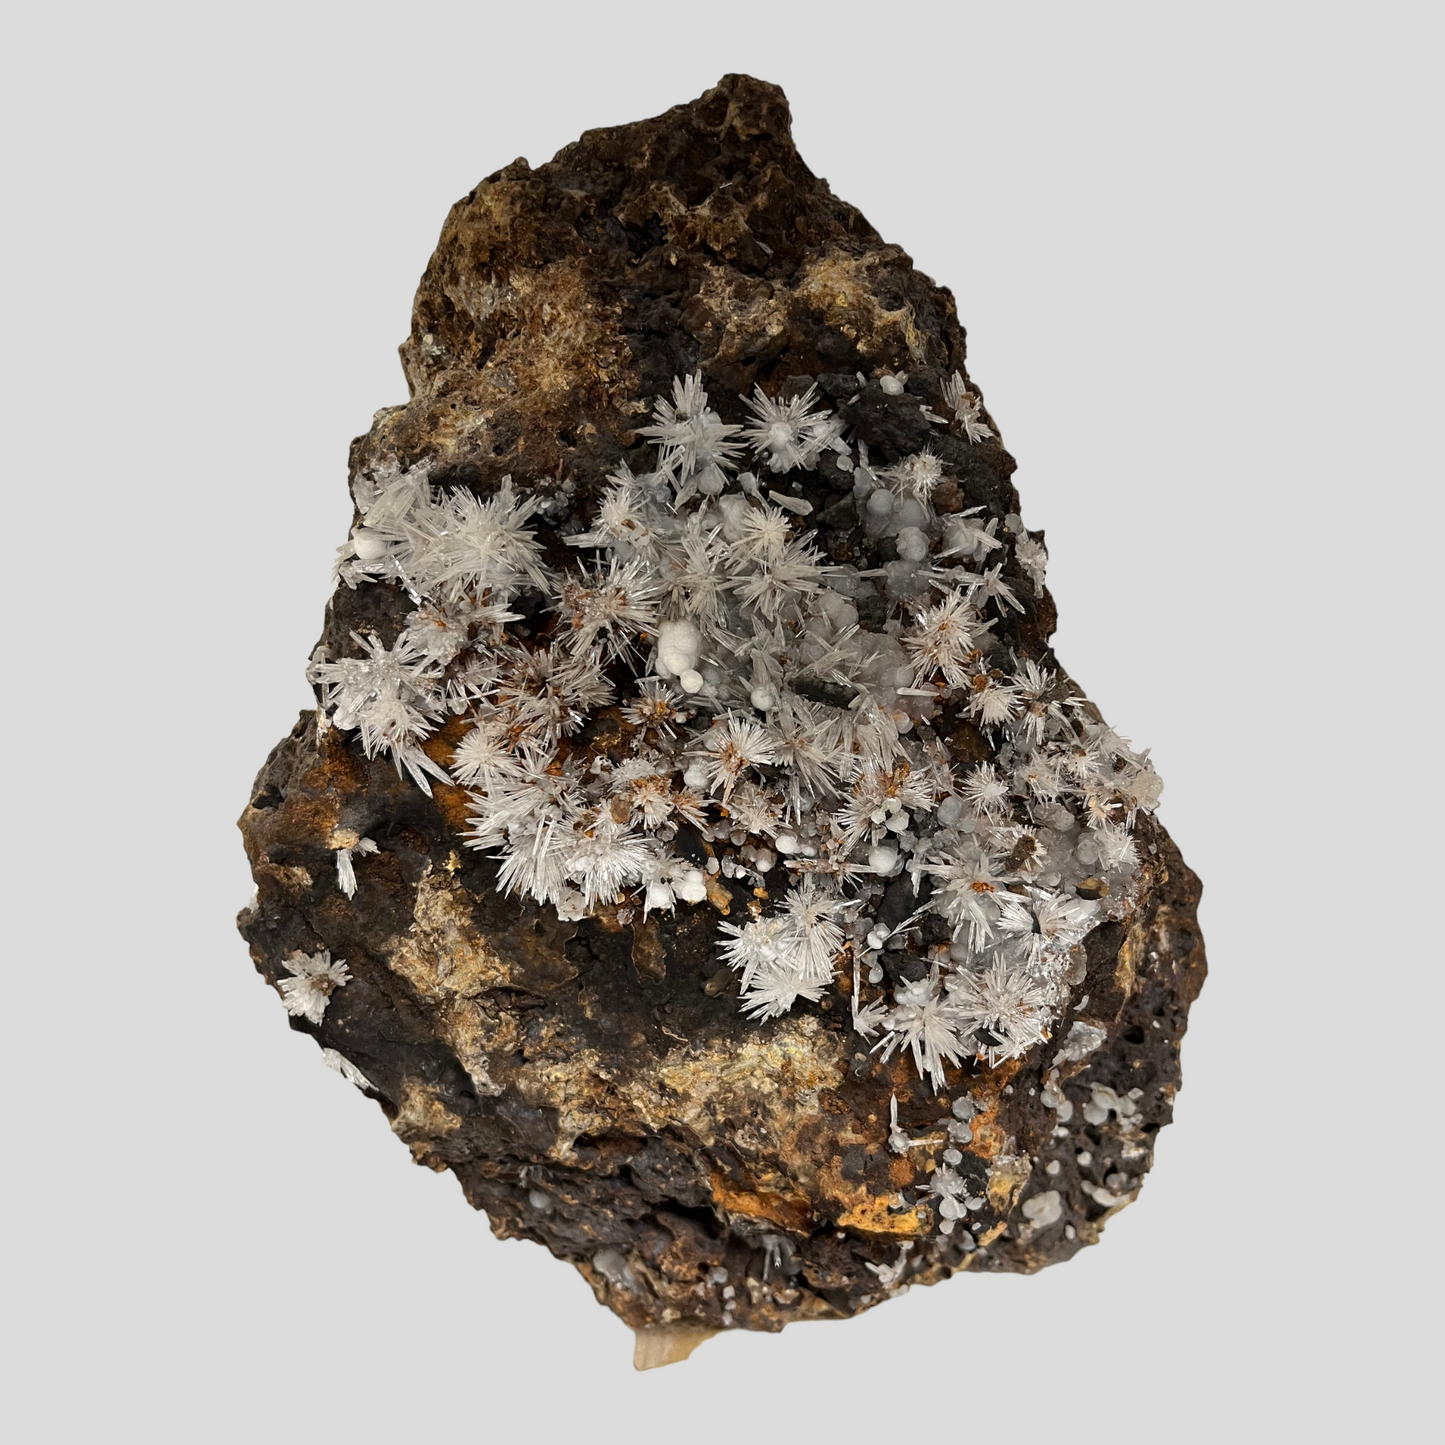 Aragonite calcite France DB51